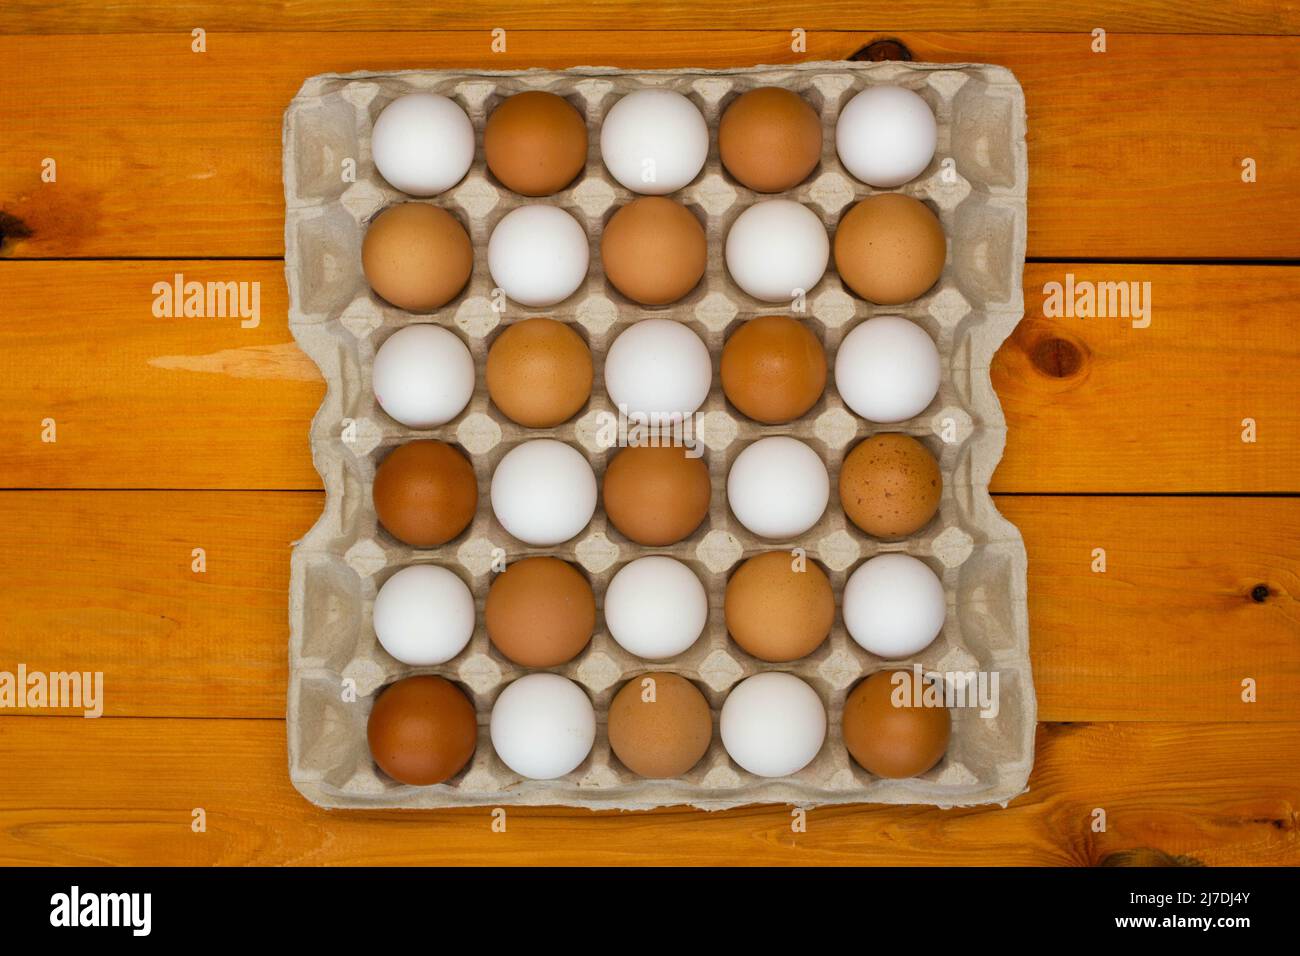 Uova di pollo in un pacchetto sul tavolo. Far rosolare e rosolare le uova di pollo nel vassoio con un motivo a scacchiera. Prodotti ecologici naturali. Fresco Foto Stock